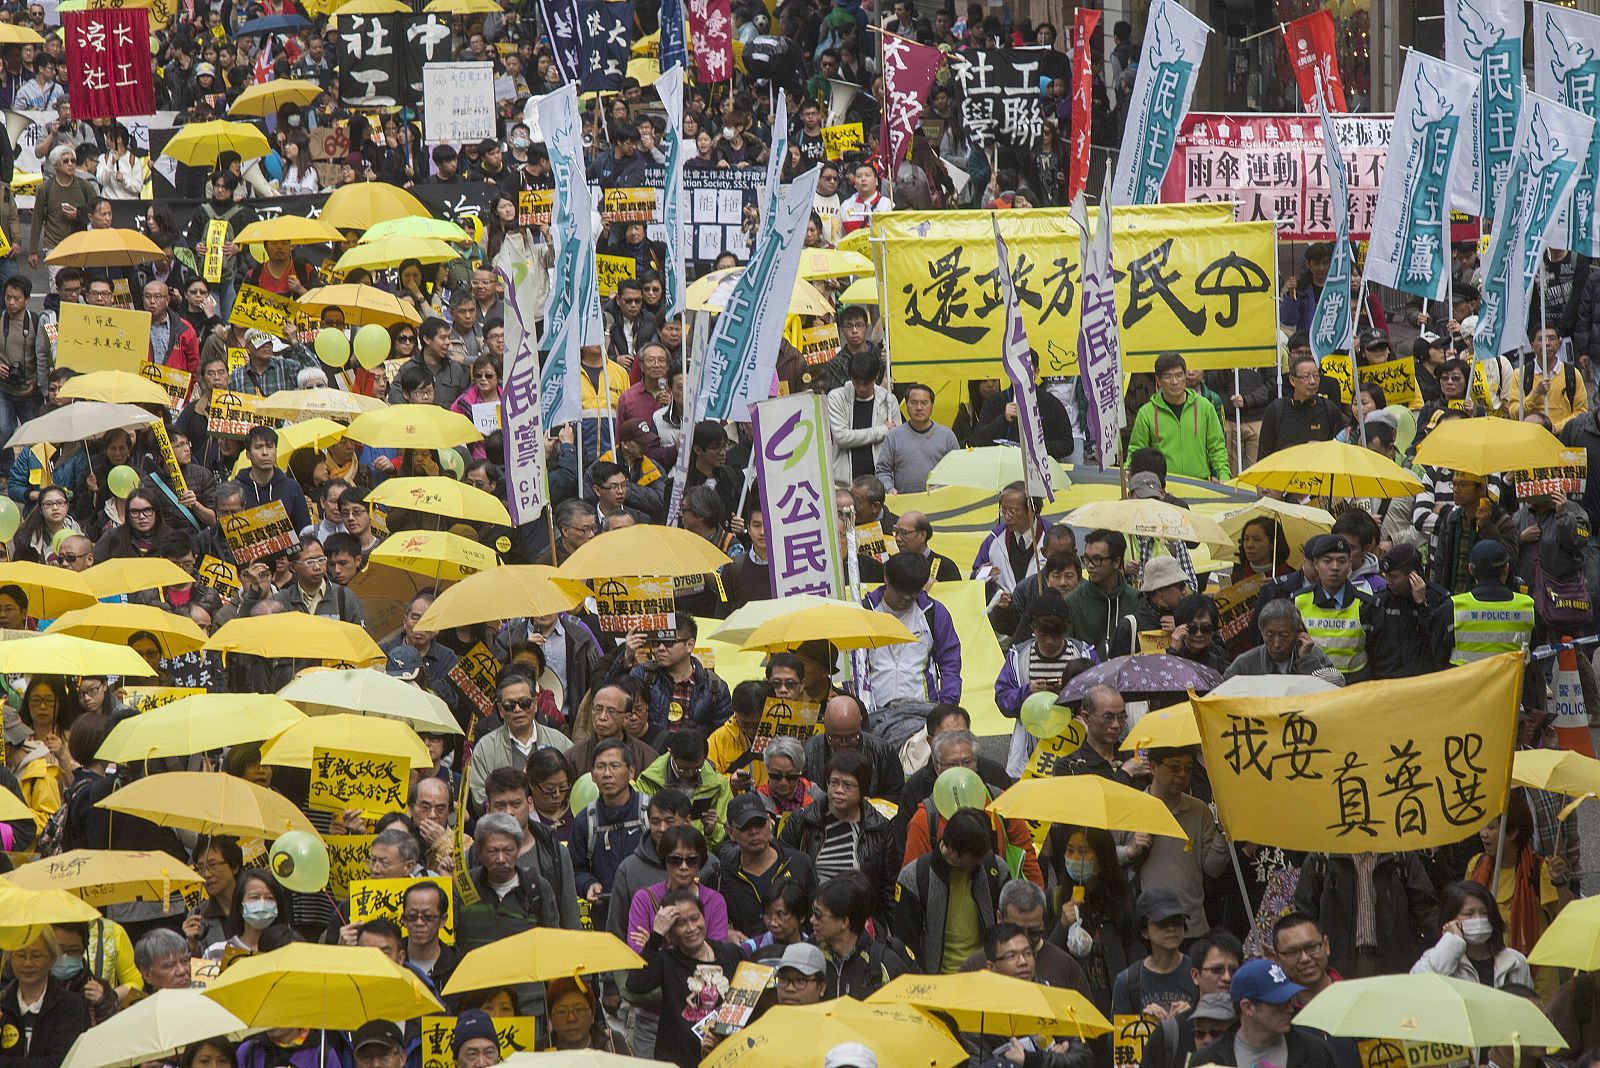 Los manifestantes de la "revolución de los paraguas" salen a las calles de Hong Kong para pedir sufragio universal real.